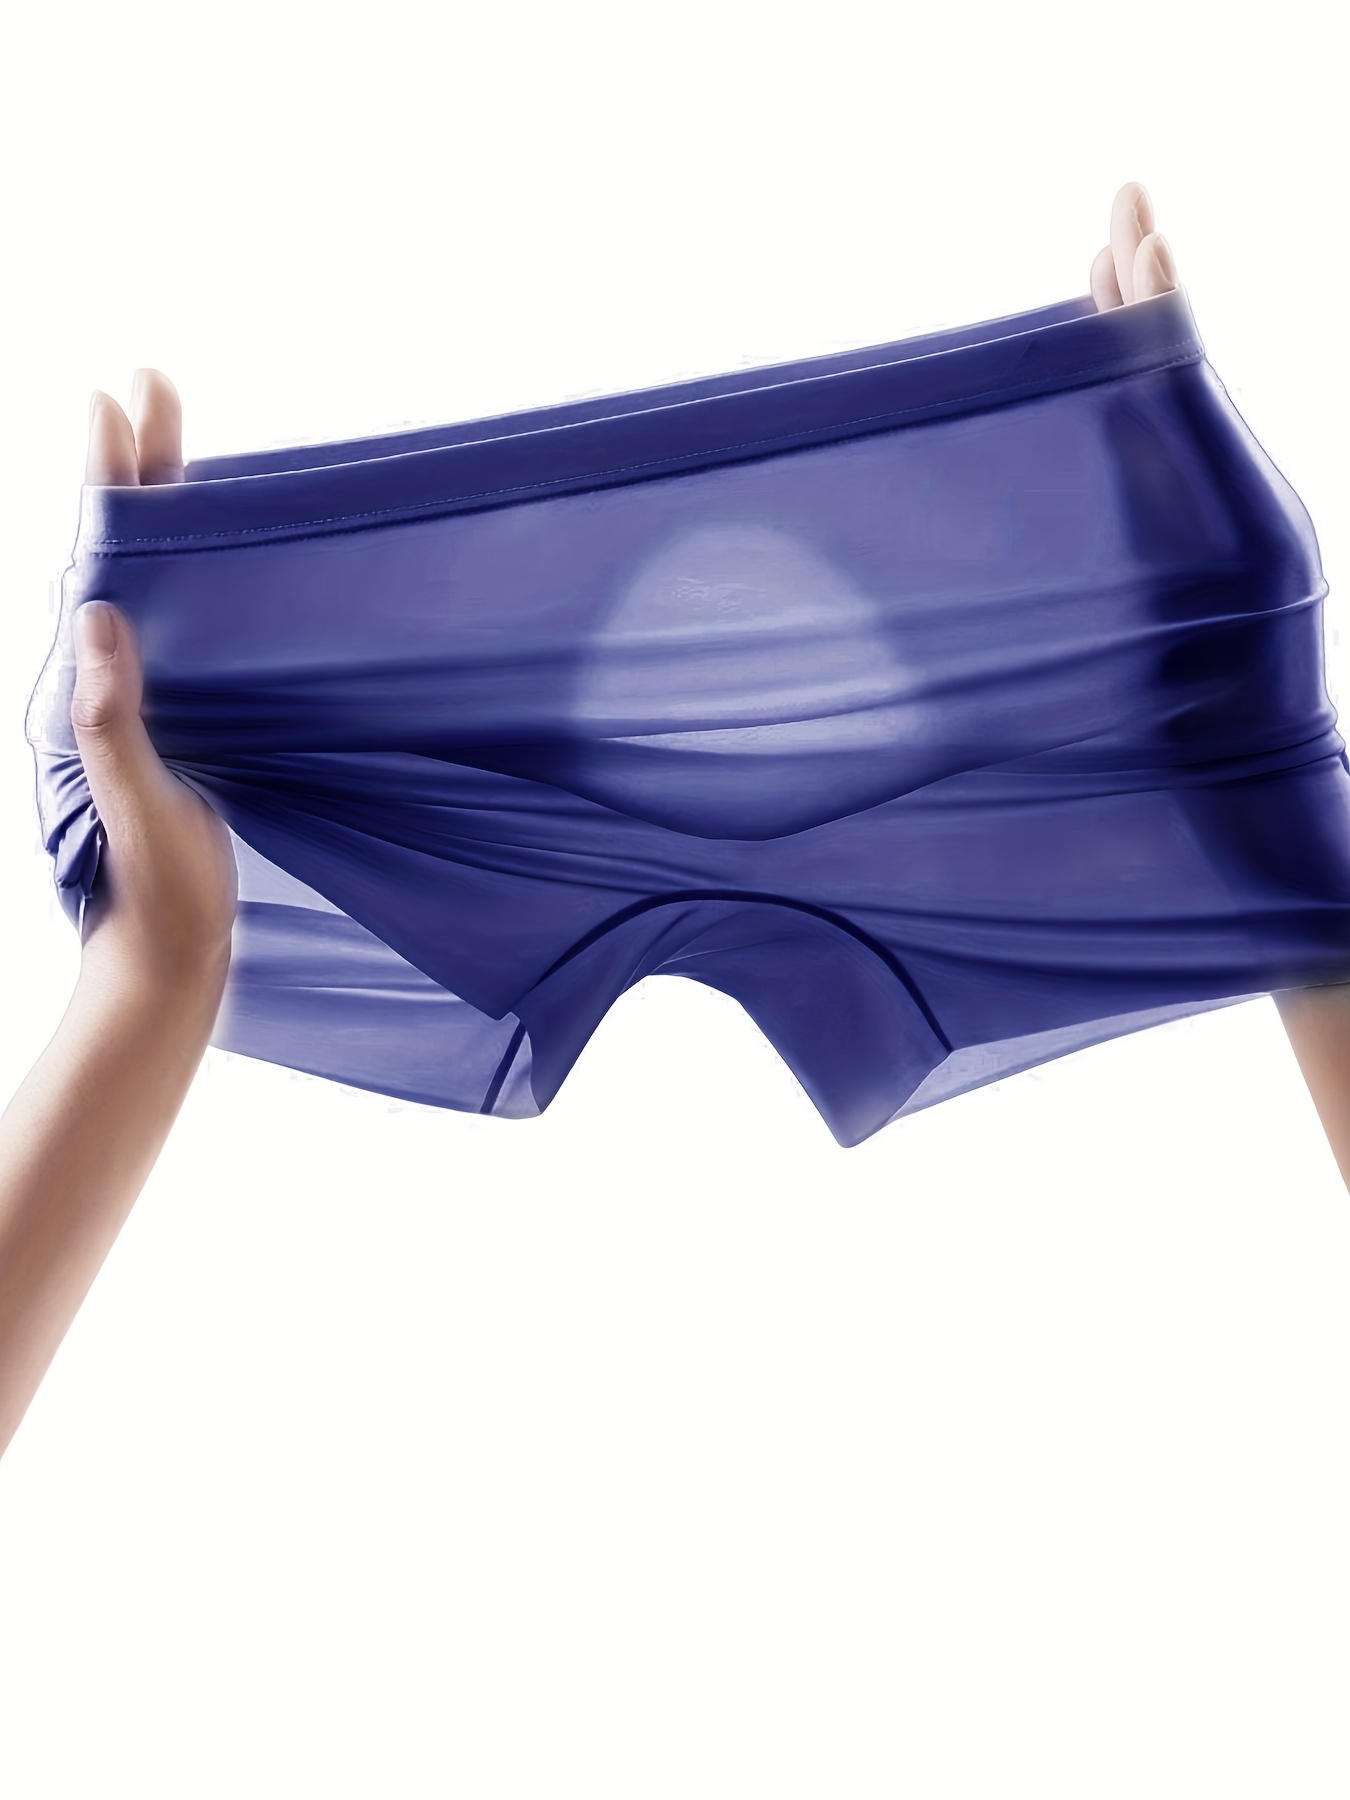 Thin Men Ice Silk Brief Panties Sexy Sheer Transparent Mesh Men Briefs  Underwear 